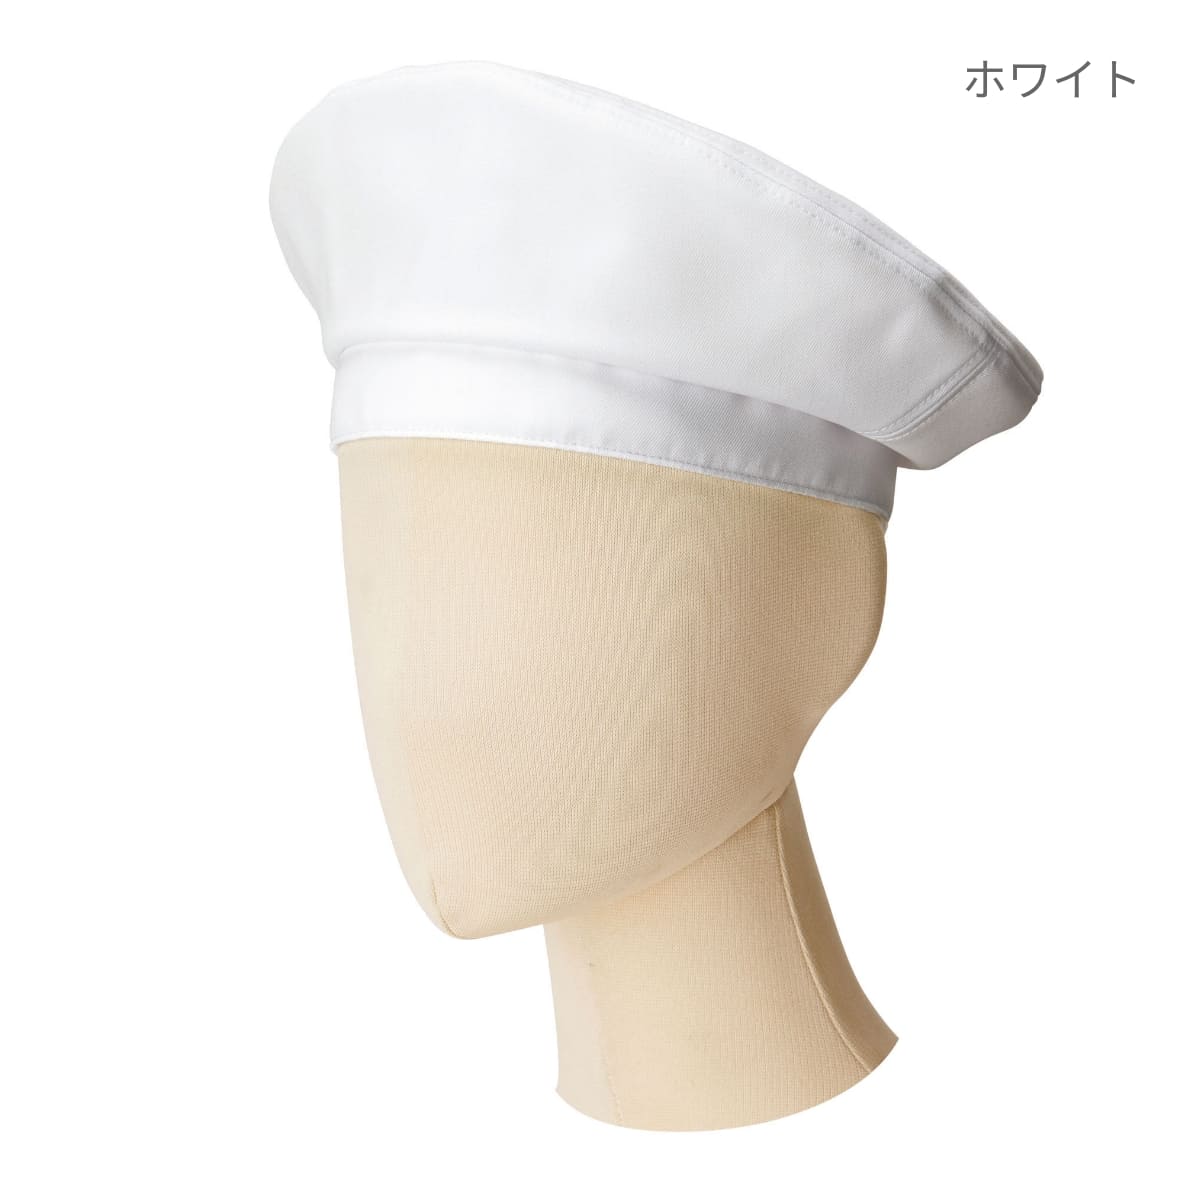 ベレー帽 | カフェ・飲食店制服 | 1枚 | FA9673 | ネイビー